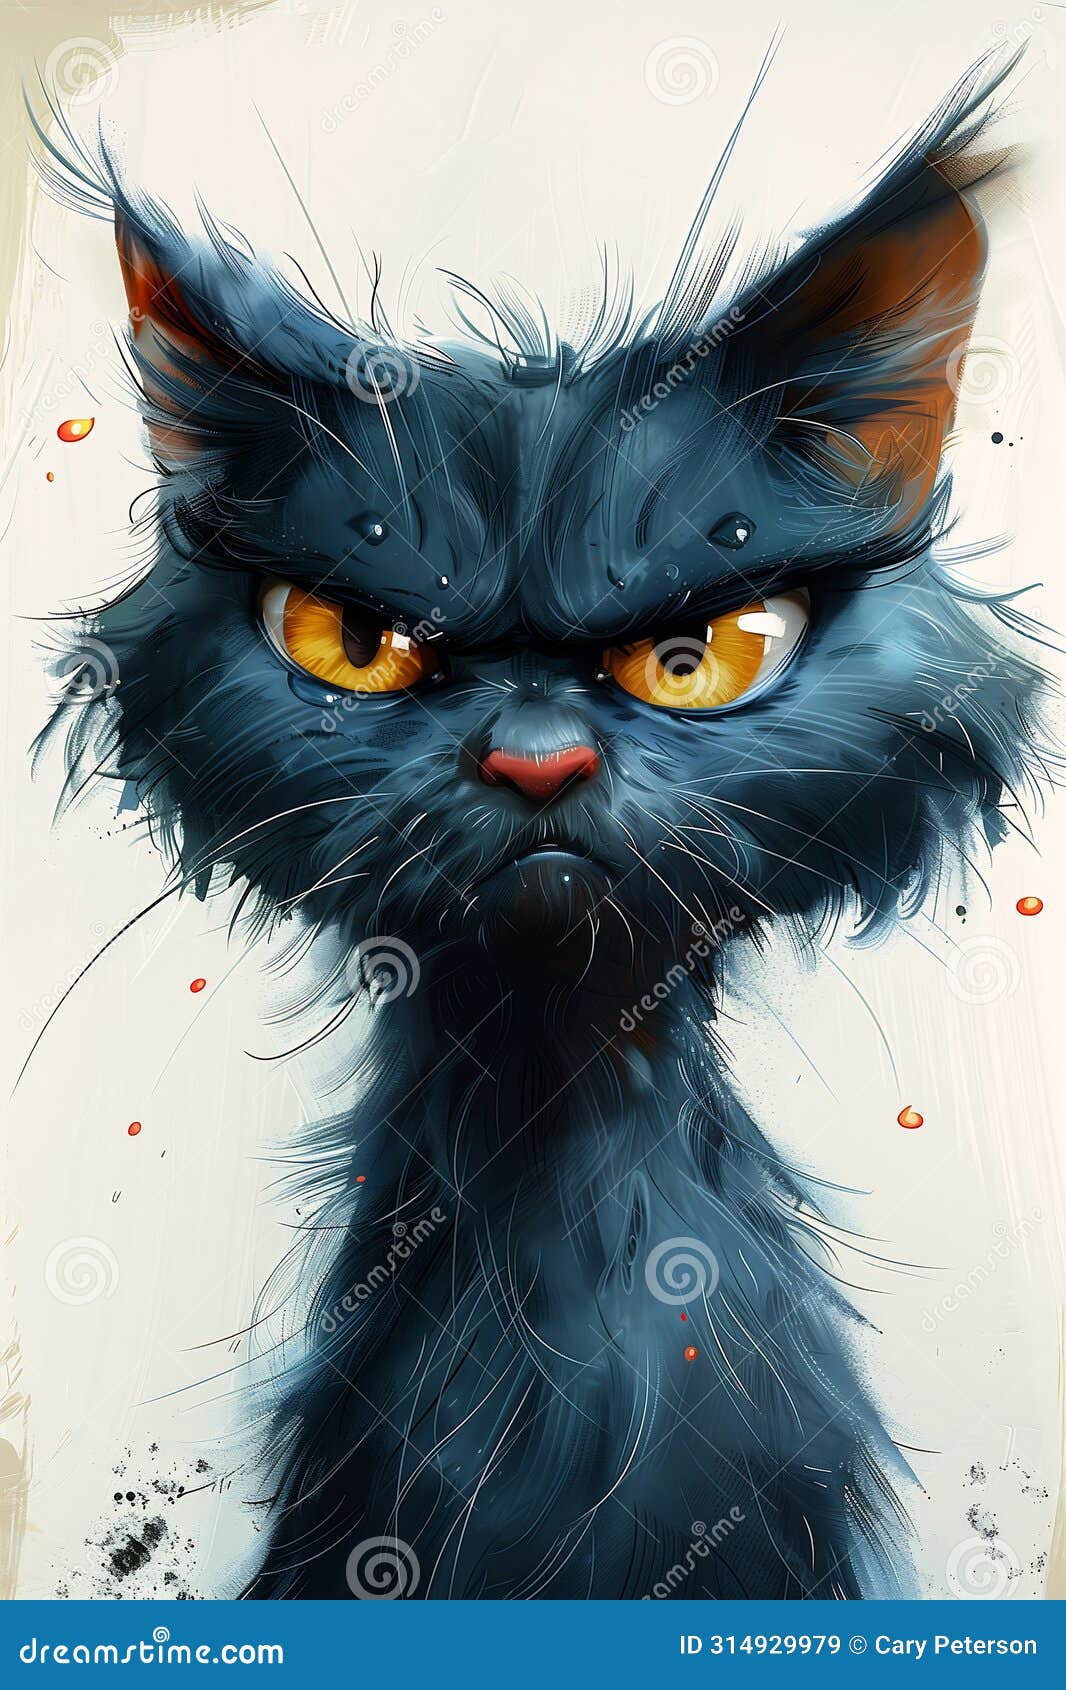 feline fury: the tale of a gruff black kitten with yellow eyes a